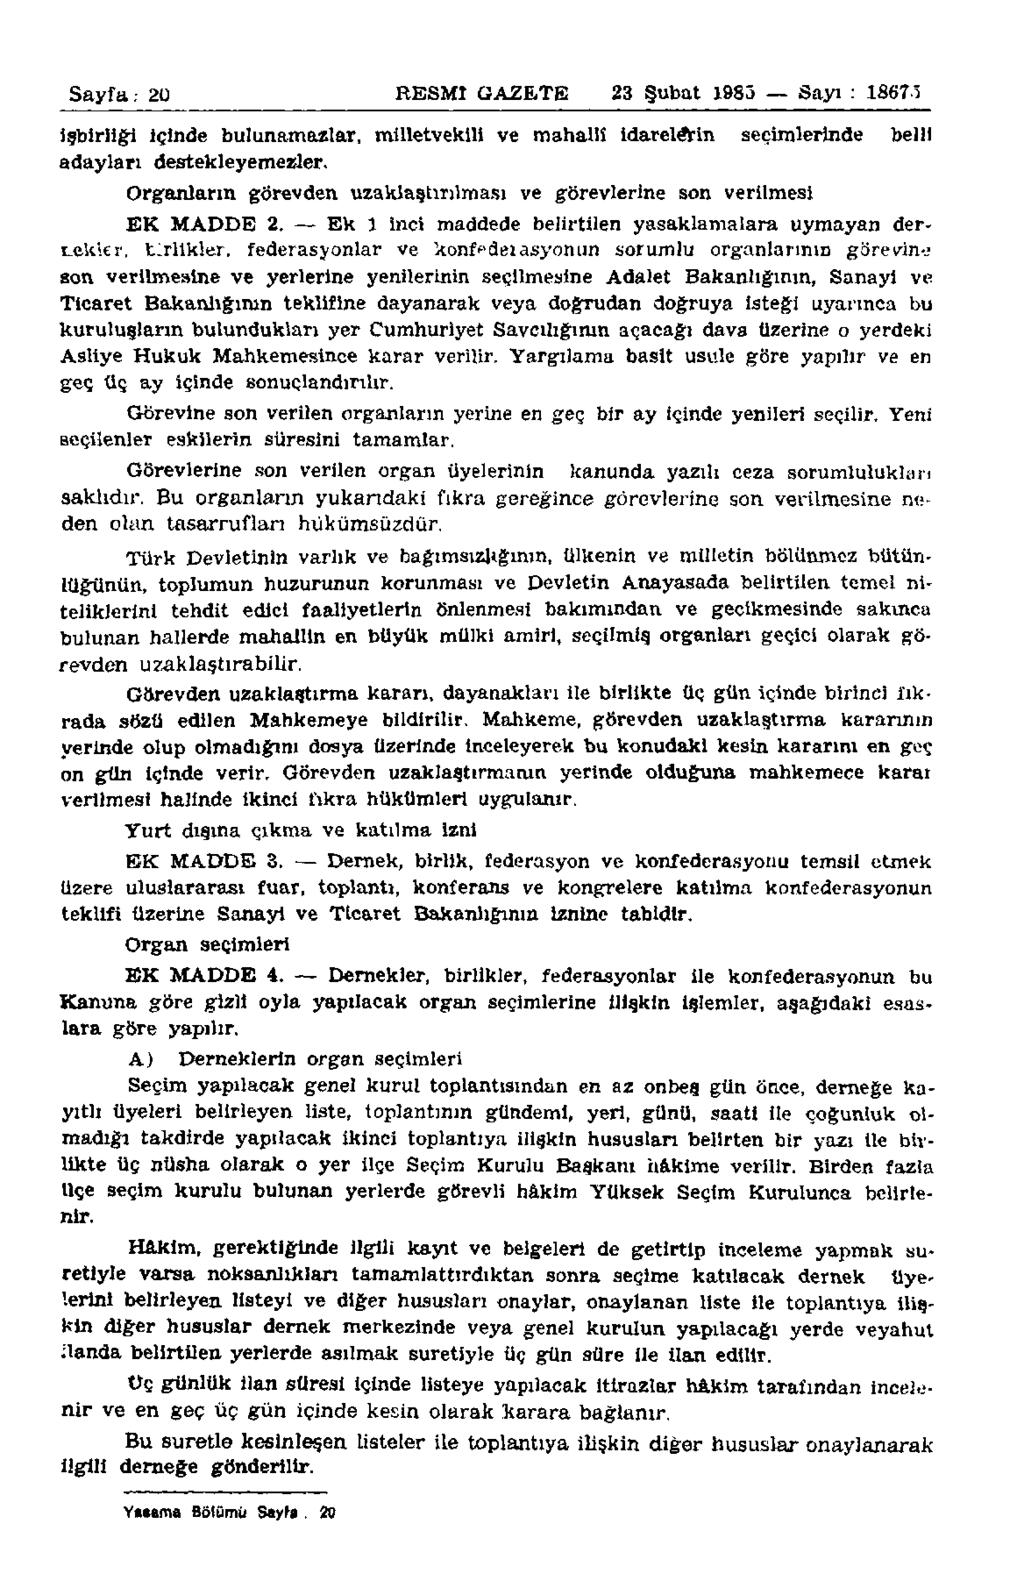 Sayfa: 20 RESMİ GAZETE 23 Şubat 1983 Sayı : 18675 işbirliği İçinde bulunamazlar, milletvekili ve mahalli idarelerin seçimlerinde belli adayları destekleyemezler.